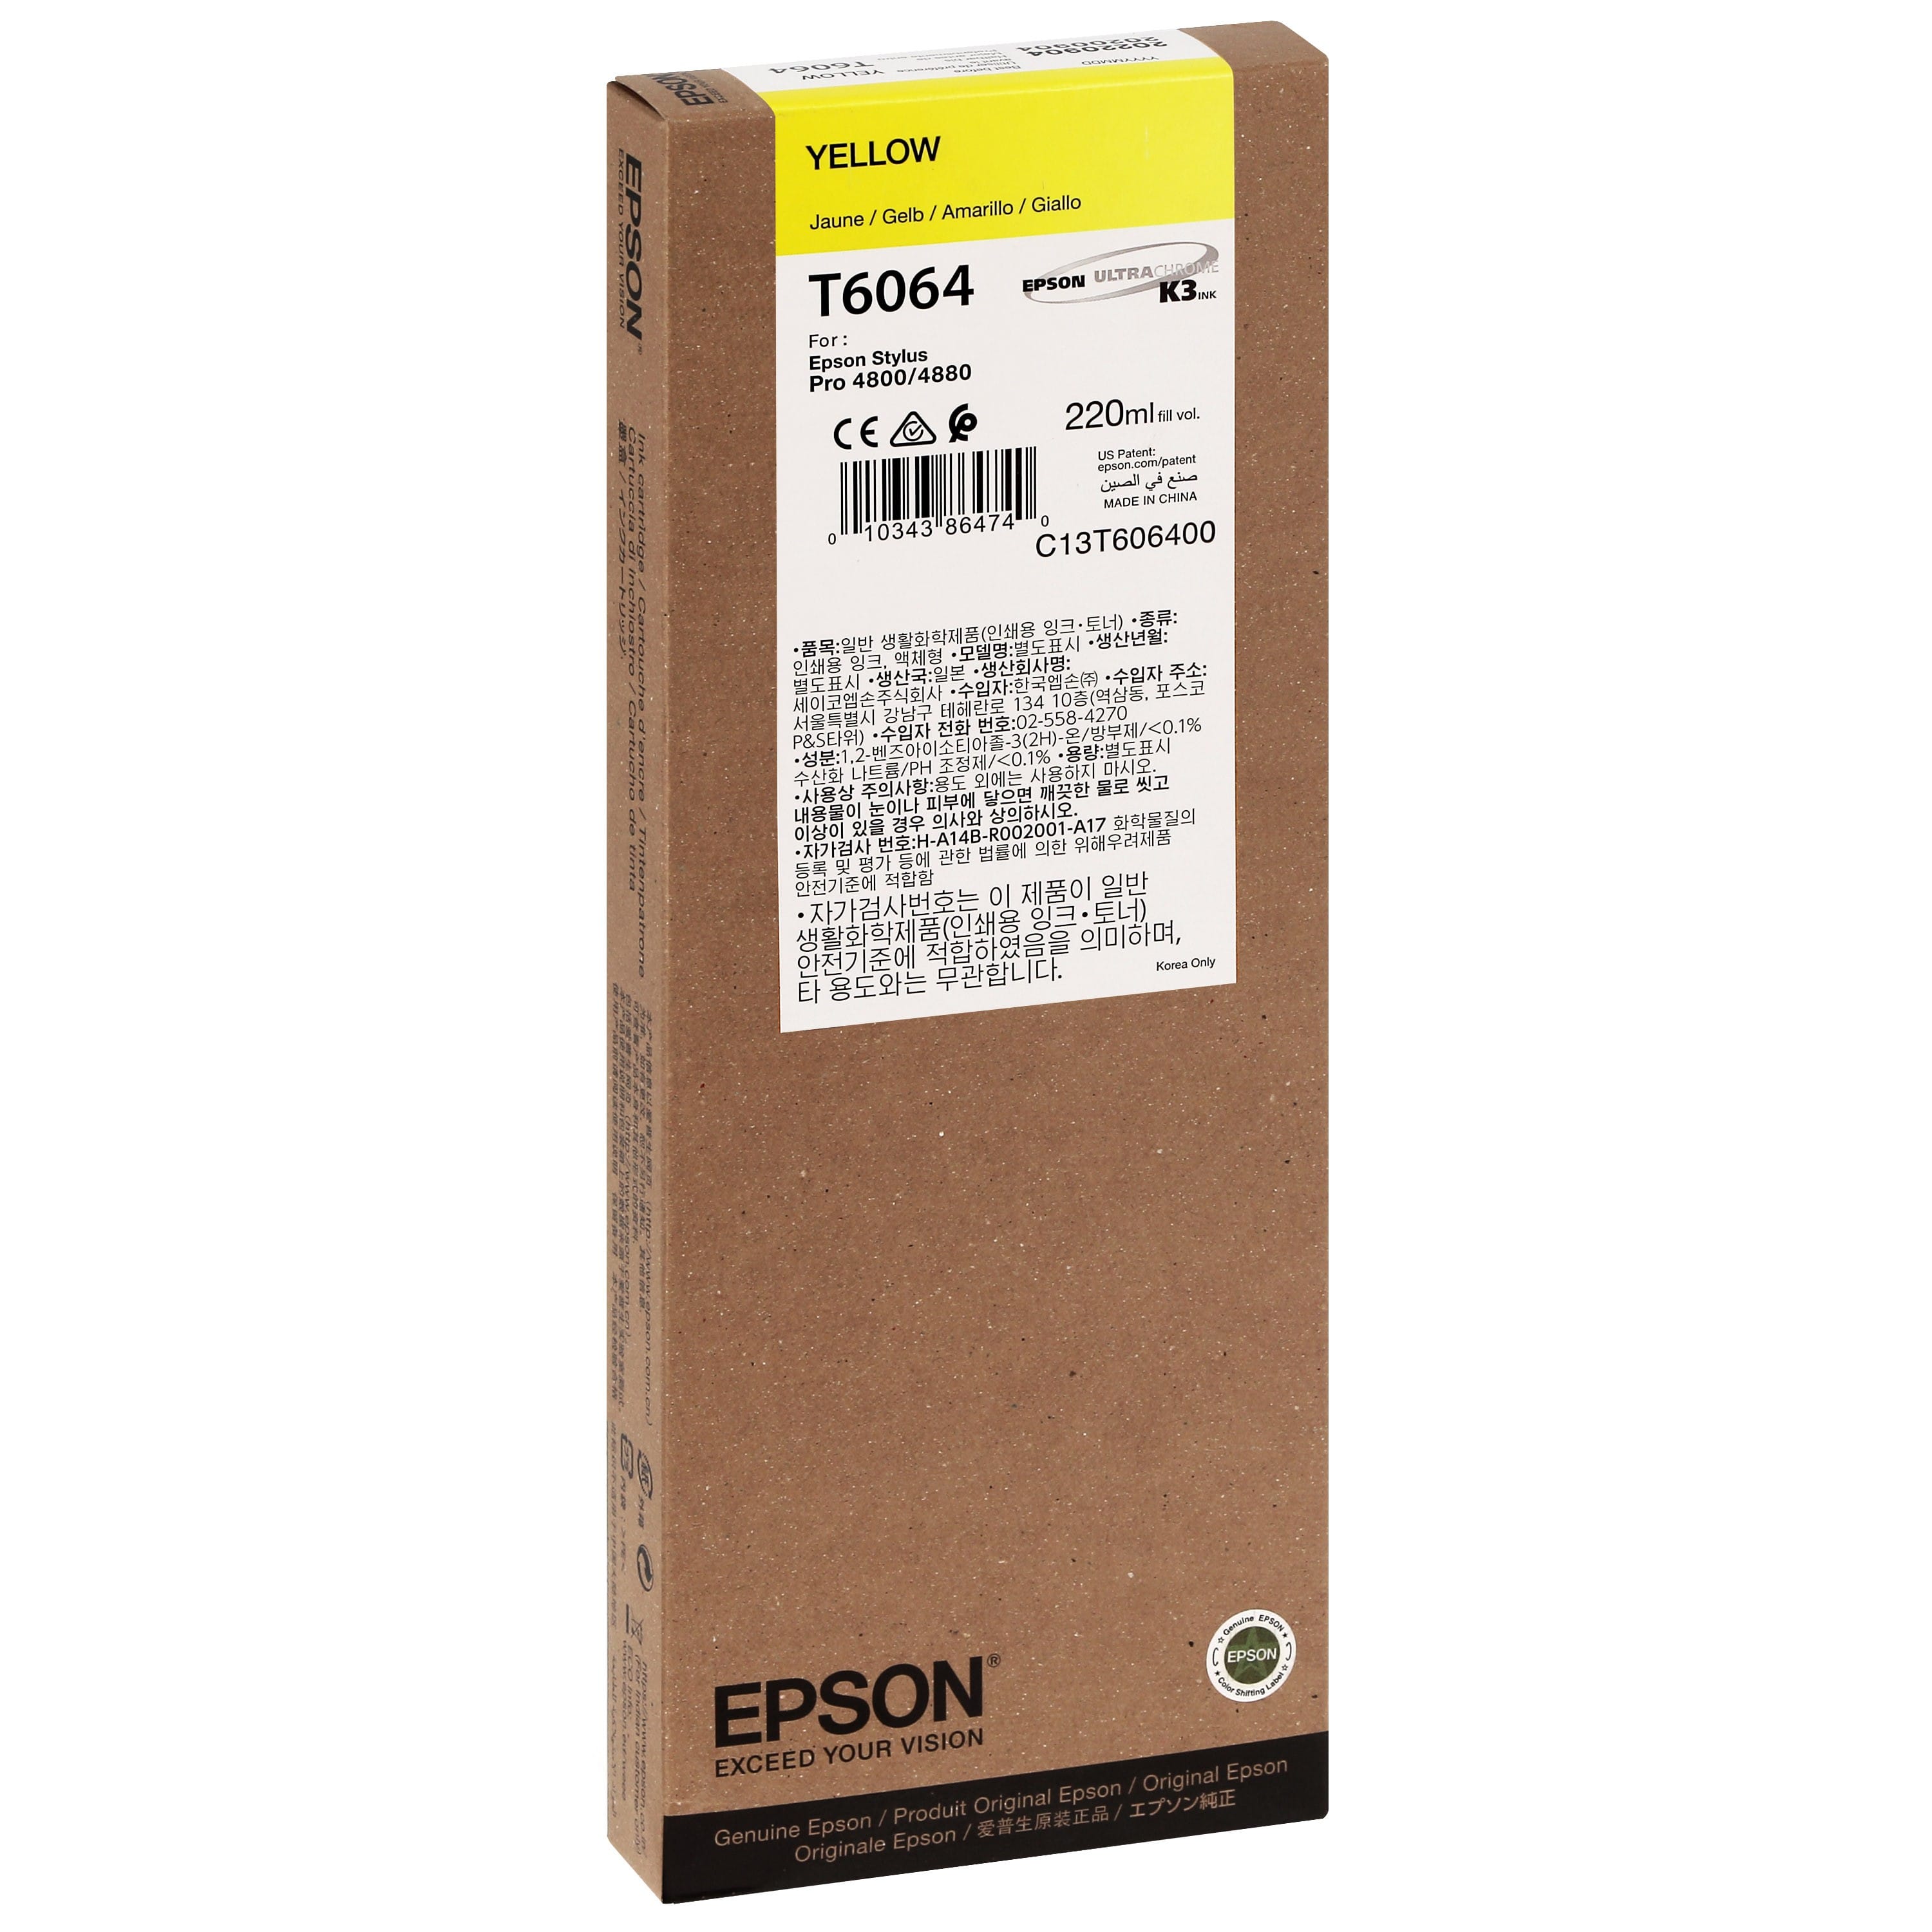 EPSON - Cartouche d'encre traceur T6064 Pour imprimante 4800/4880 Jaune - 220ml